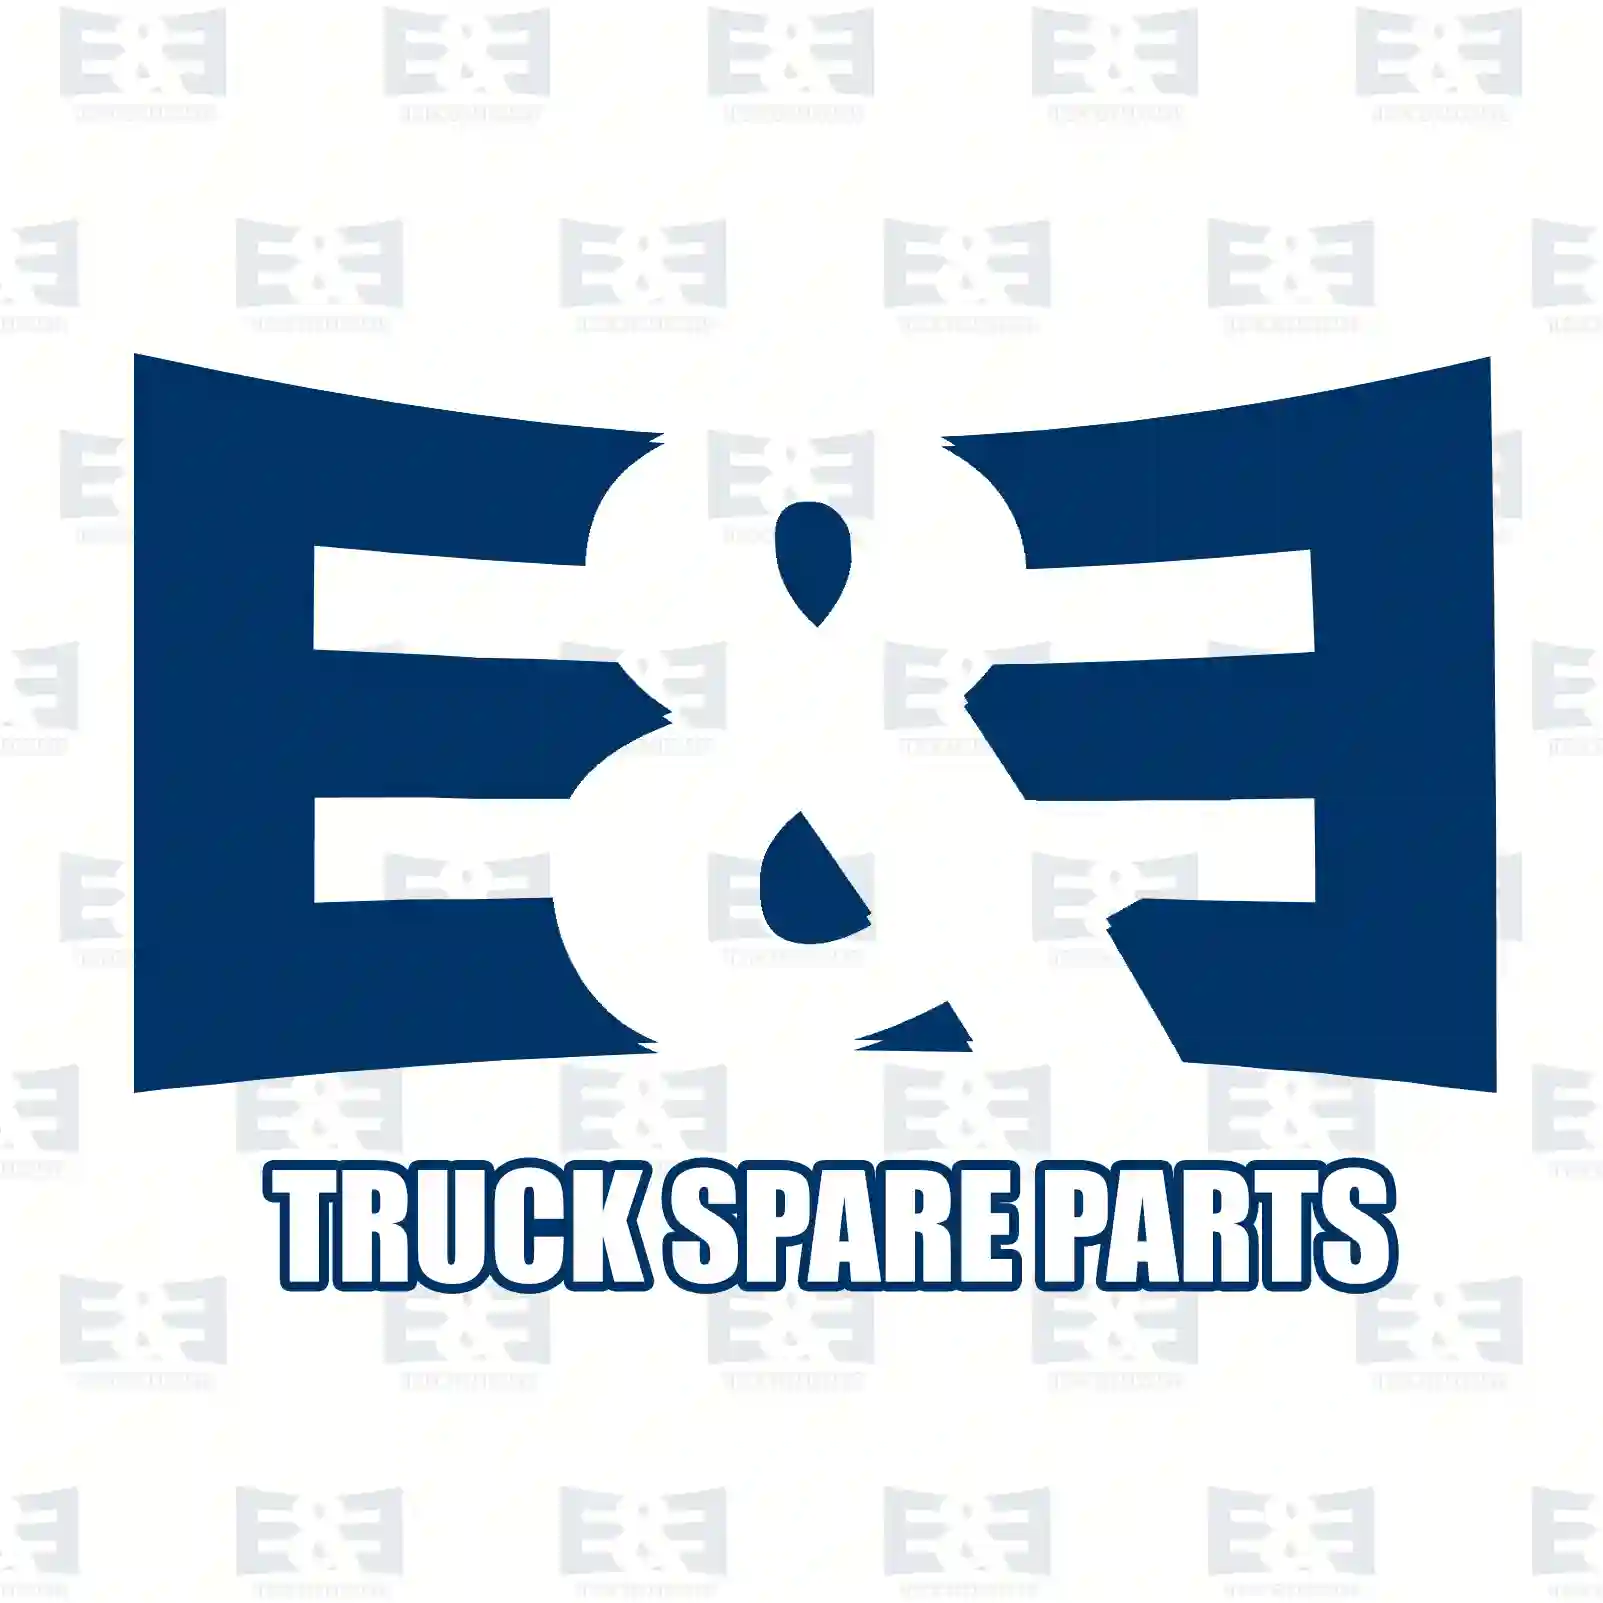 Camshaft, 2E2207705, 7420742608, 21110842, 22431883, ZG30389-0008 ||  2E2207705 E&E Truck Spare Parts | Truck Spare Parts, Auotomotive Spare Parts Camshaft, 2E2207705, 7420742608, 21110842, 22431883, ZG30389-0008 ||  2E2207705 E&E Truck Spare Parts | Truck Spare Parts, Auotomotive Spare Parts